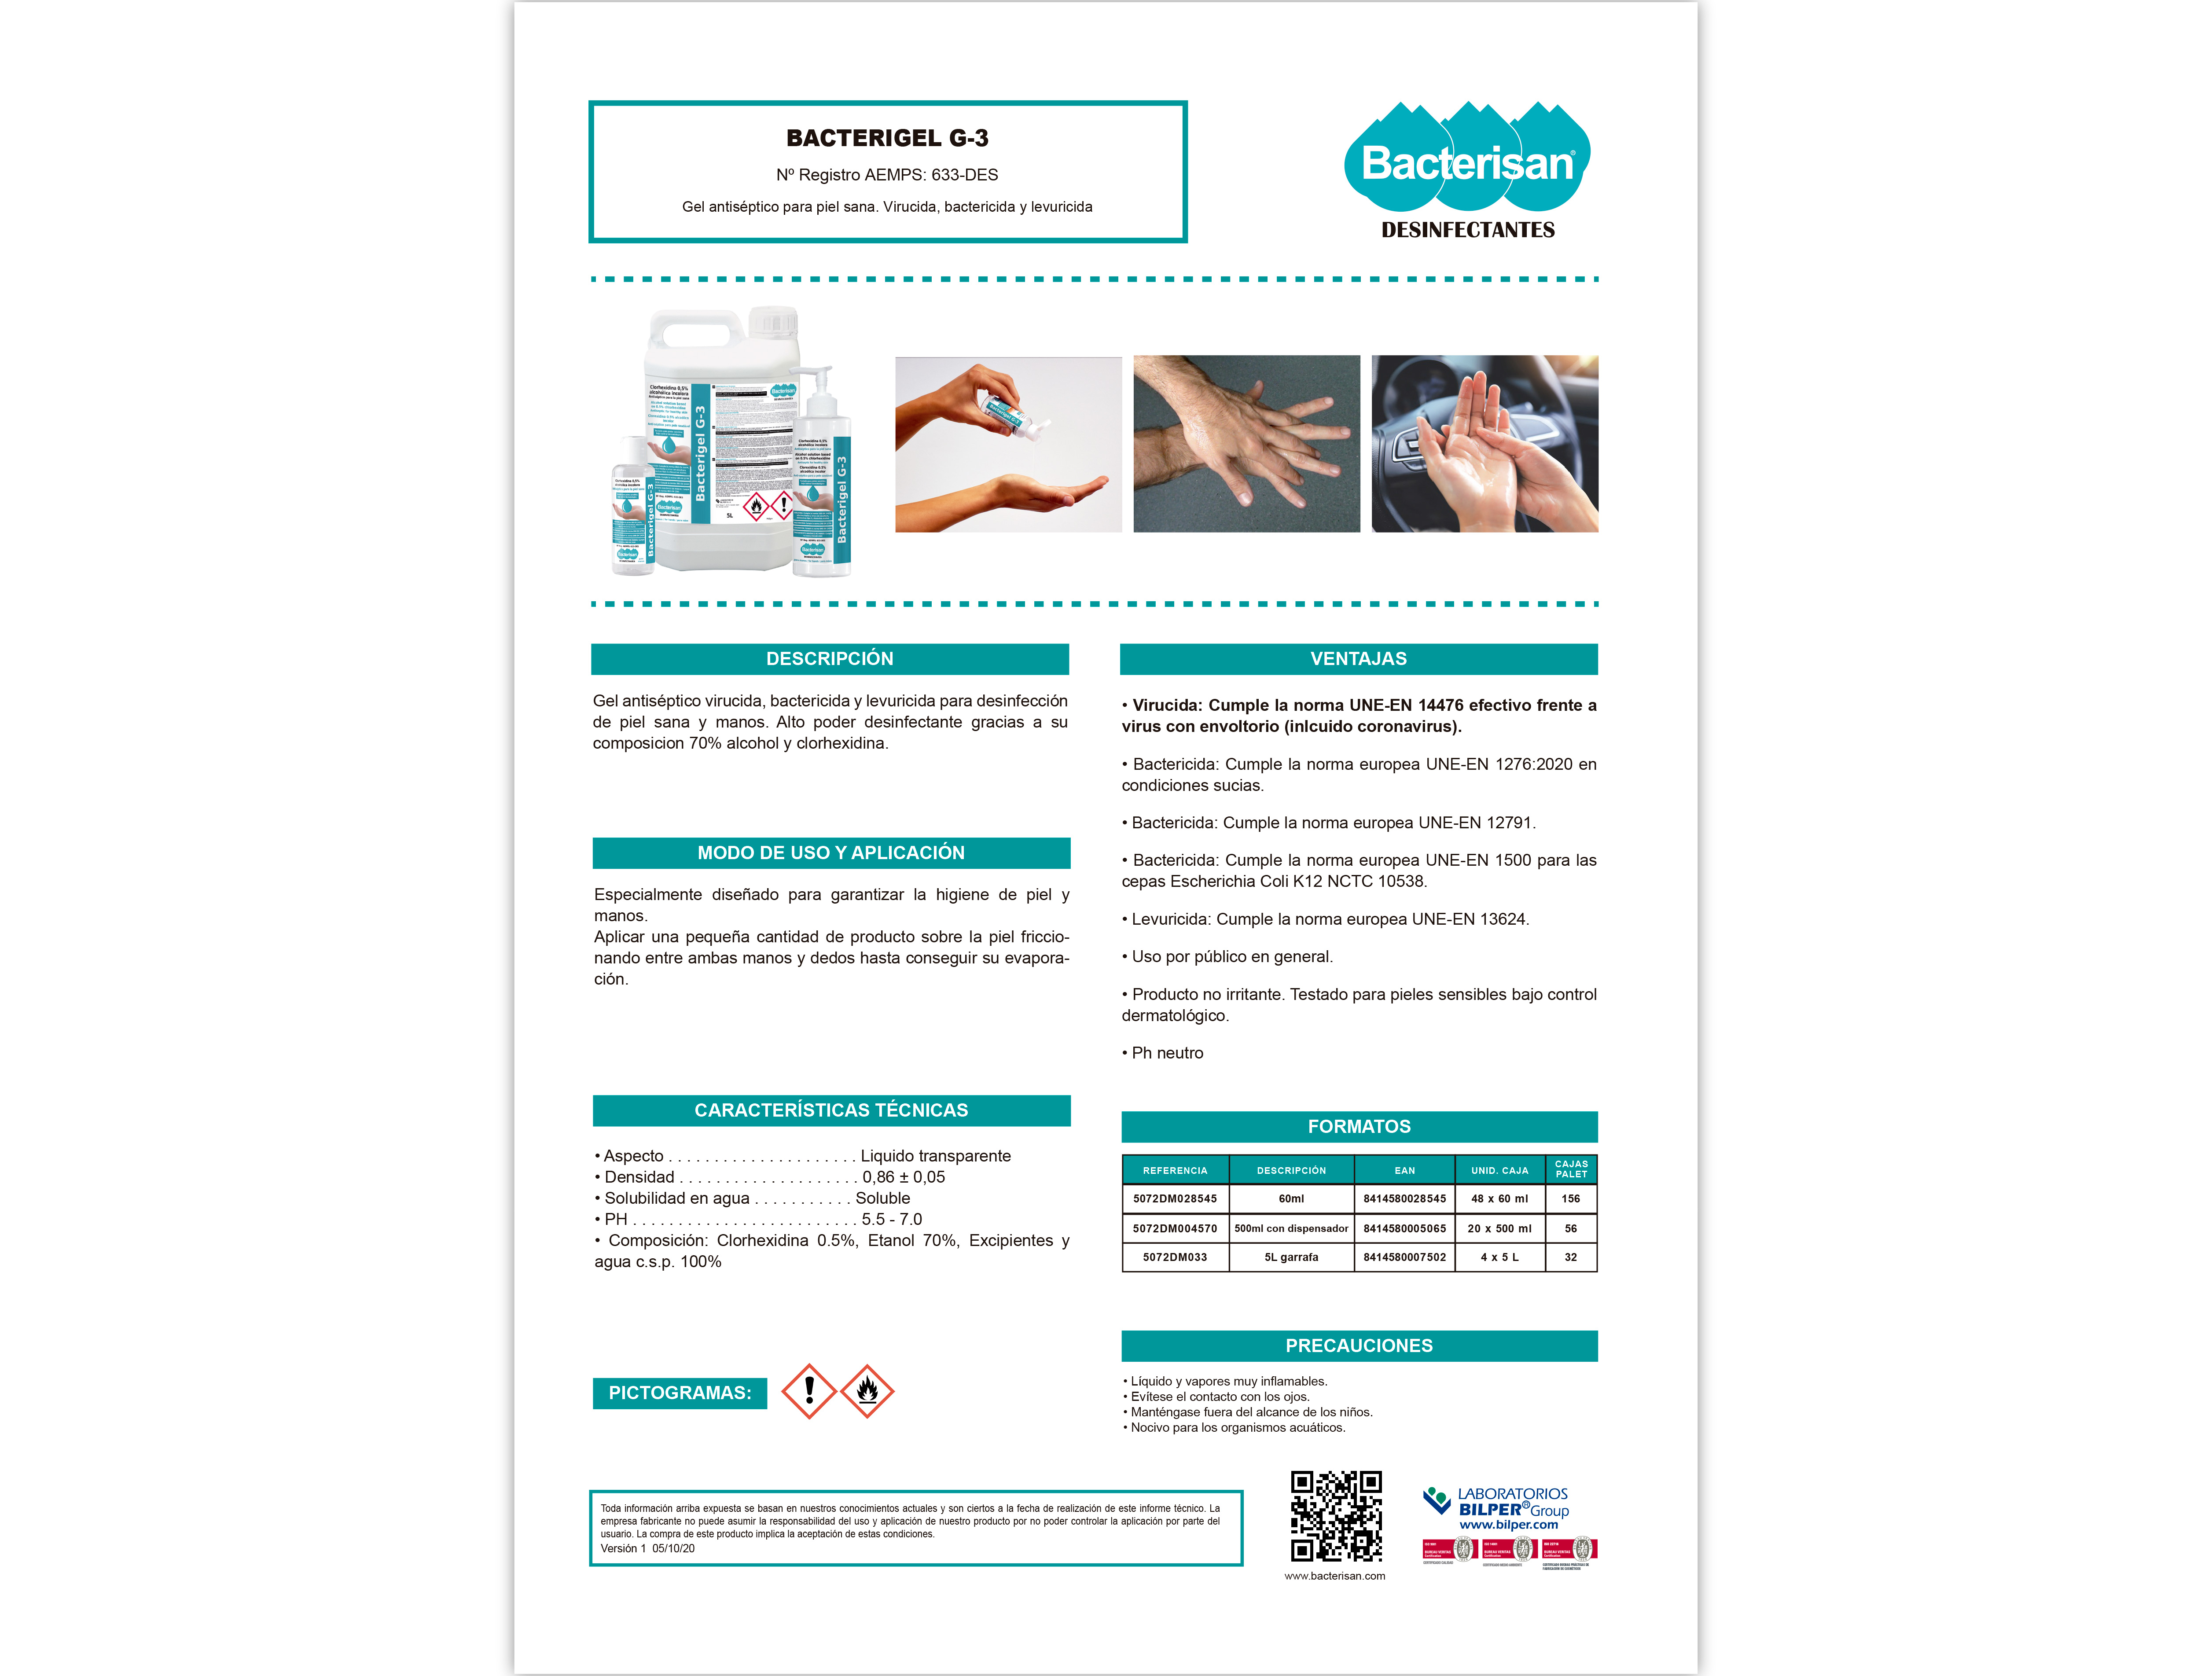 OTROS - Limpiador higienizante desinfectante germosan 60ml bp3 para superficies y mobiliario bote pulverizador (Ref. 5012GD029566)